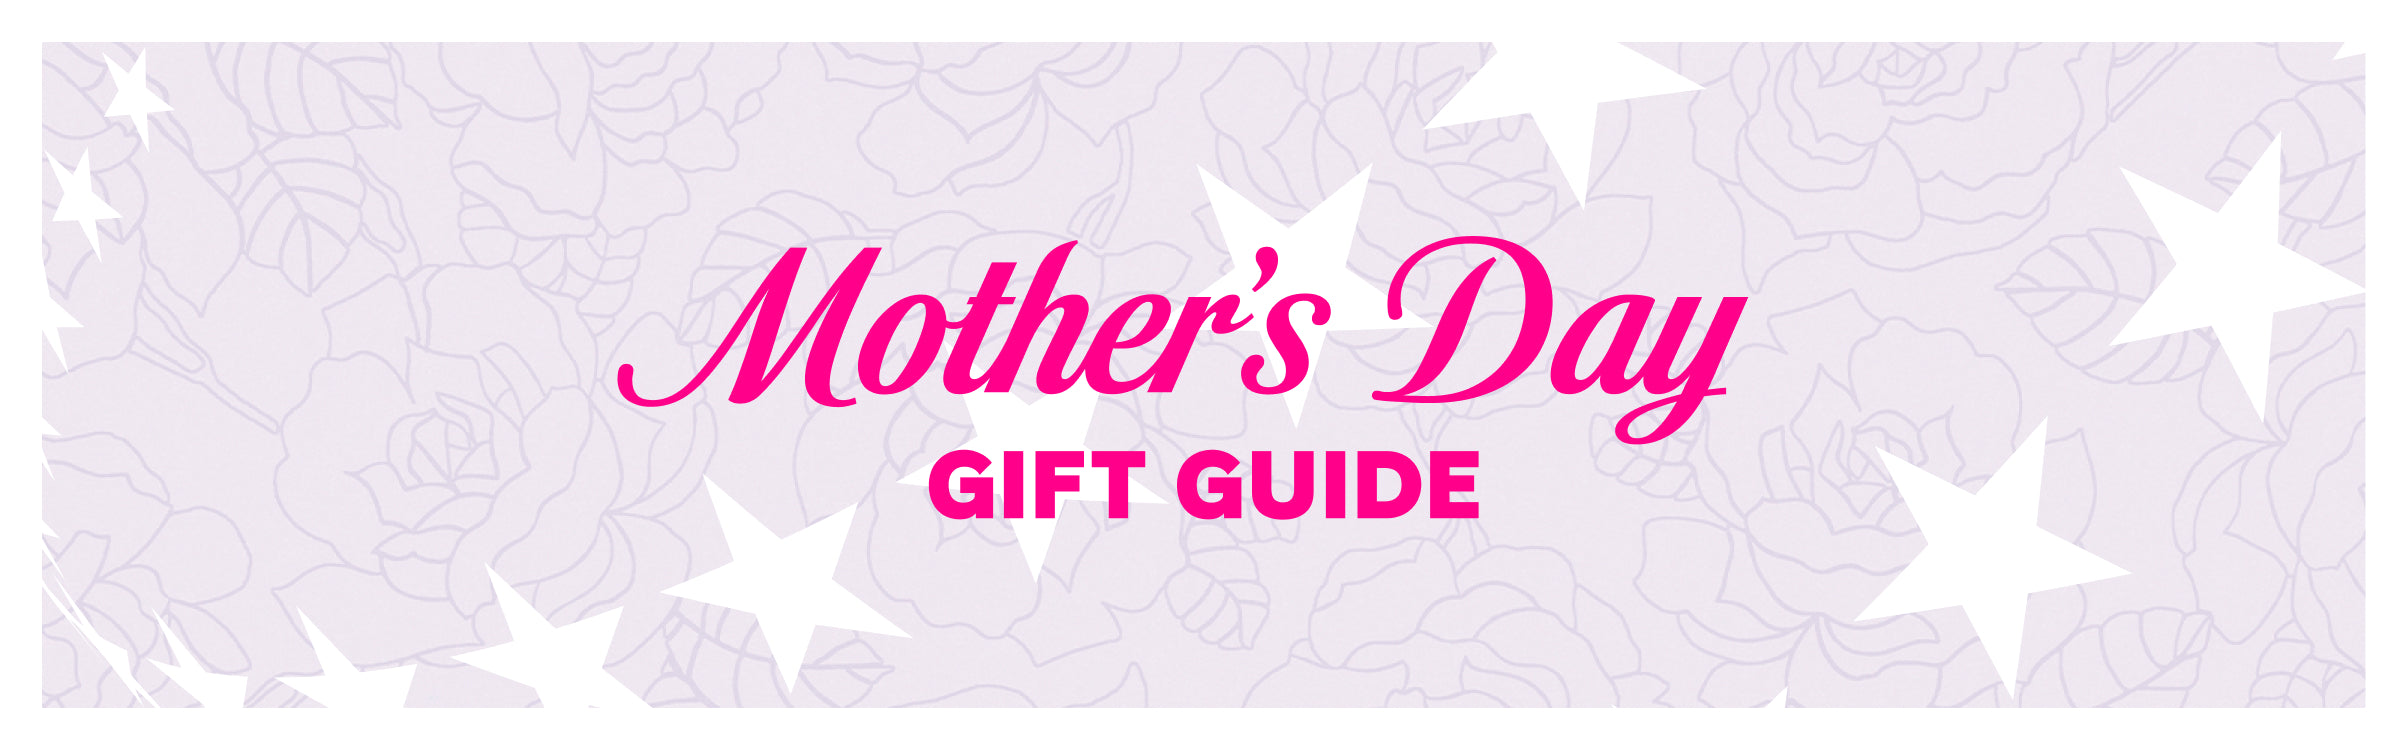 premium-banner-fête des mères guide des cadeaux